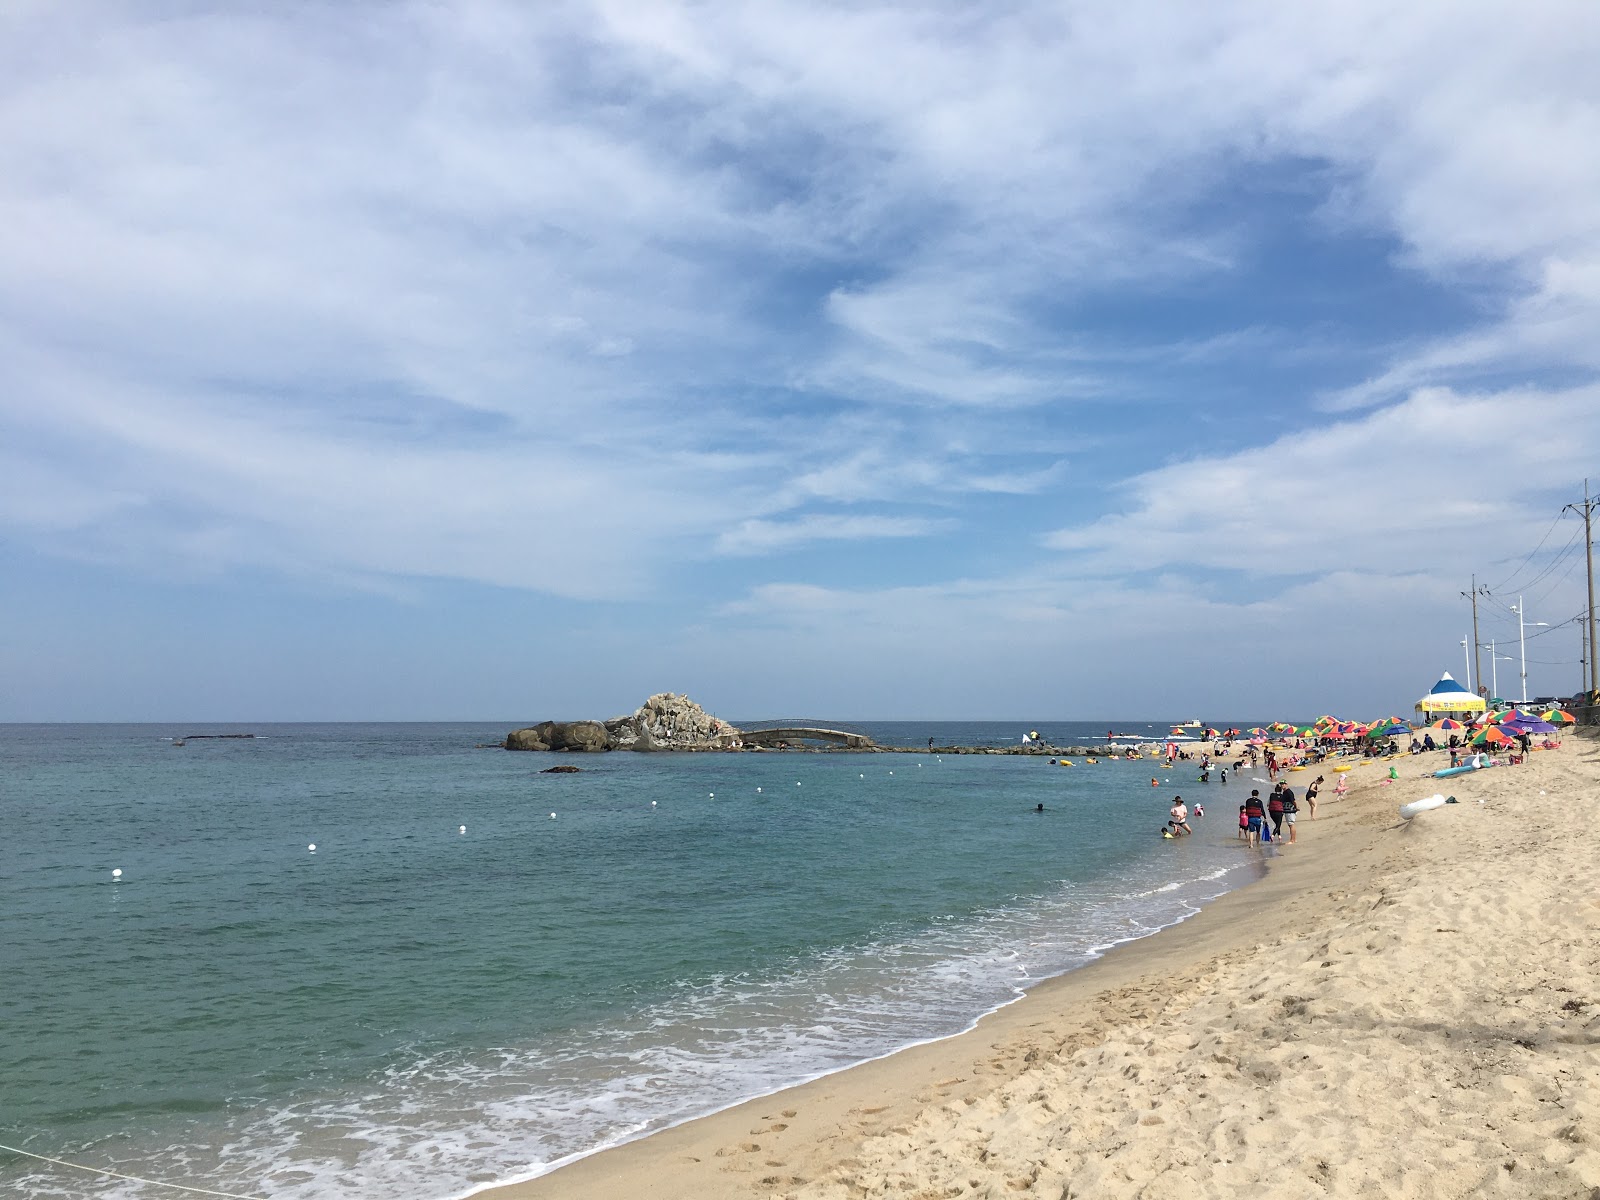 Fotografie cu Sacheonjin Beach - locul popular printre cunoscătorii de relaxare